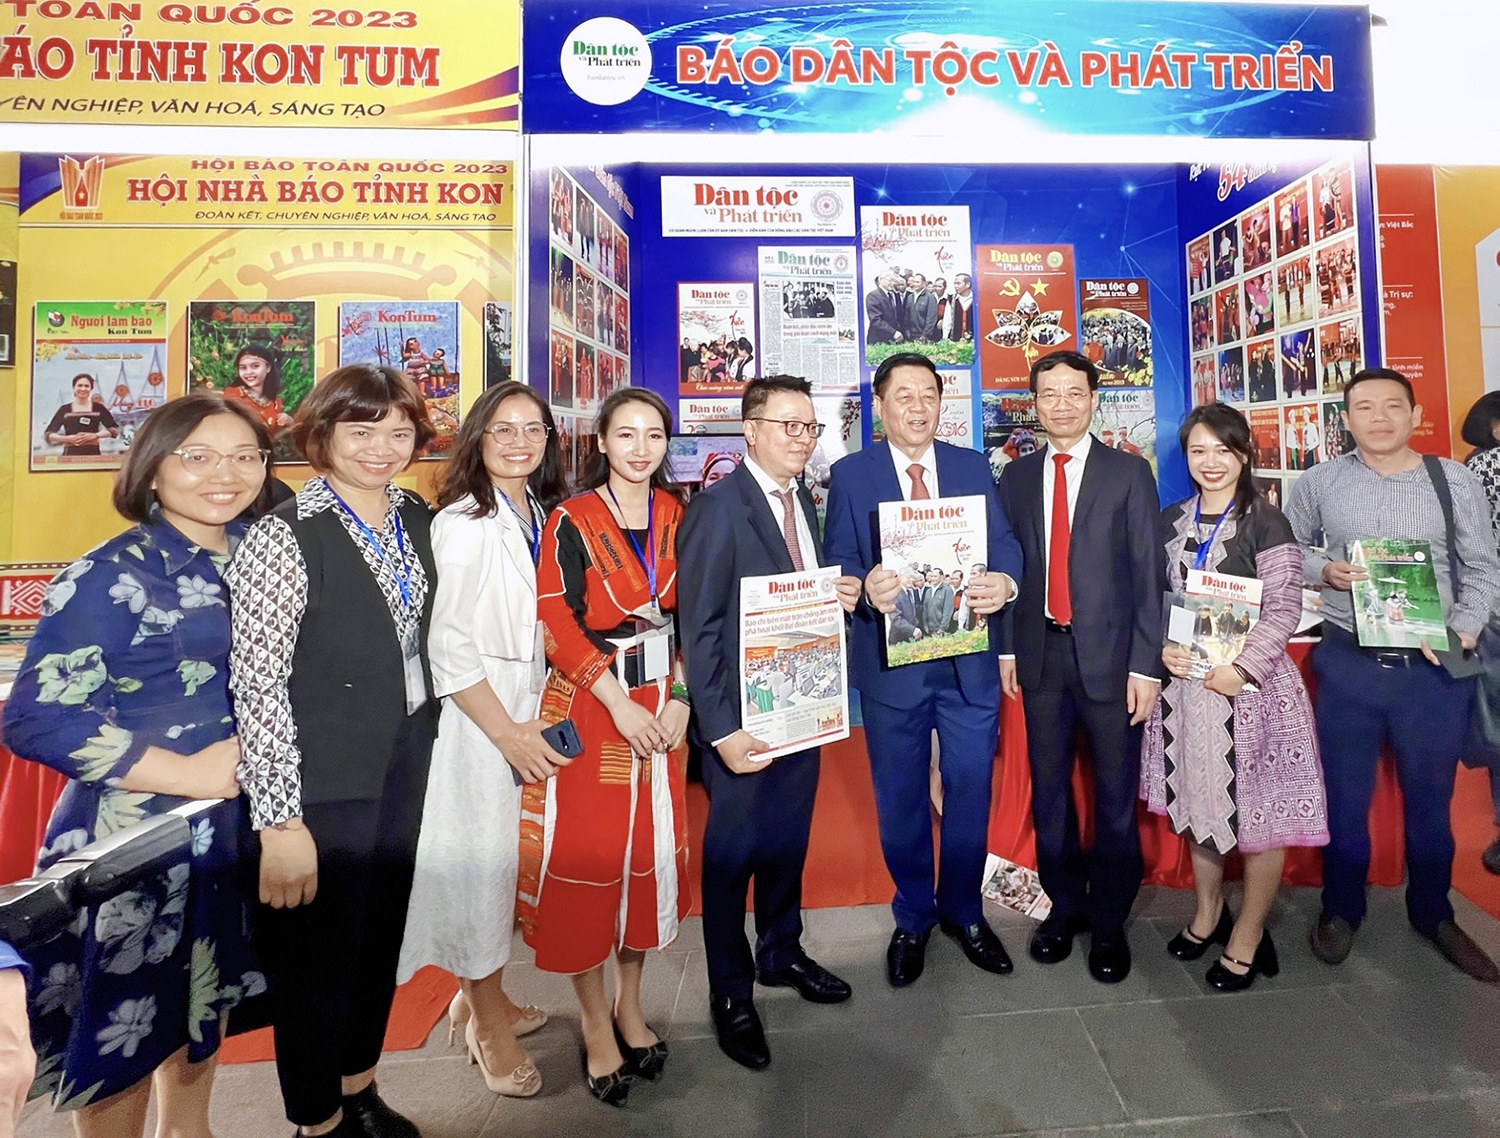 Lãnh đạo Ban Tuyên giáo Trung ương, Bộ Thông tin và Truyền thông, Hội Nhà báo Việt Nam đến tham quan gian trưng bày của Báo và chụp ảnh lưu niệm tại gian hàng.